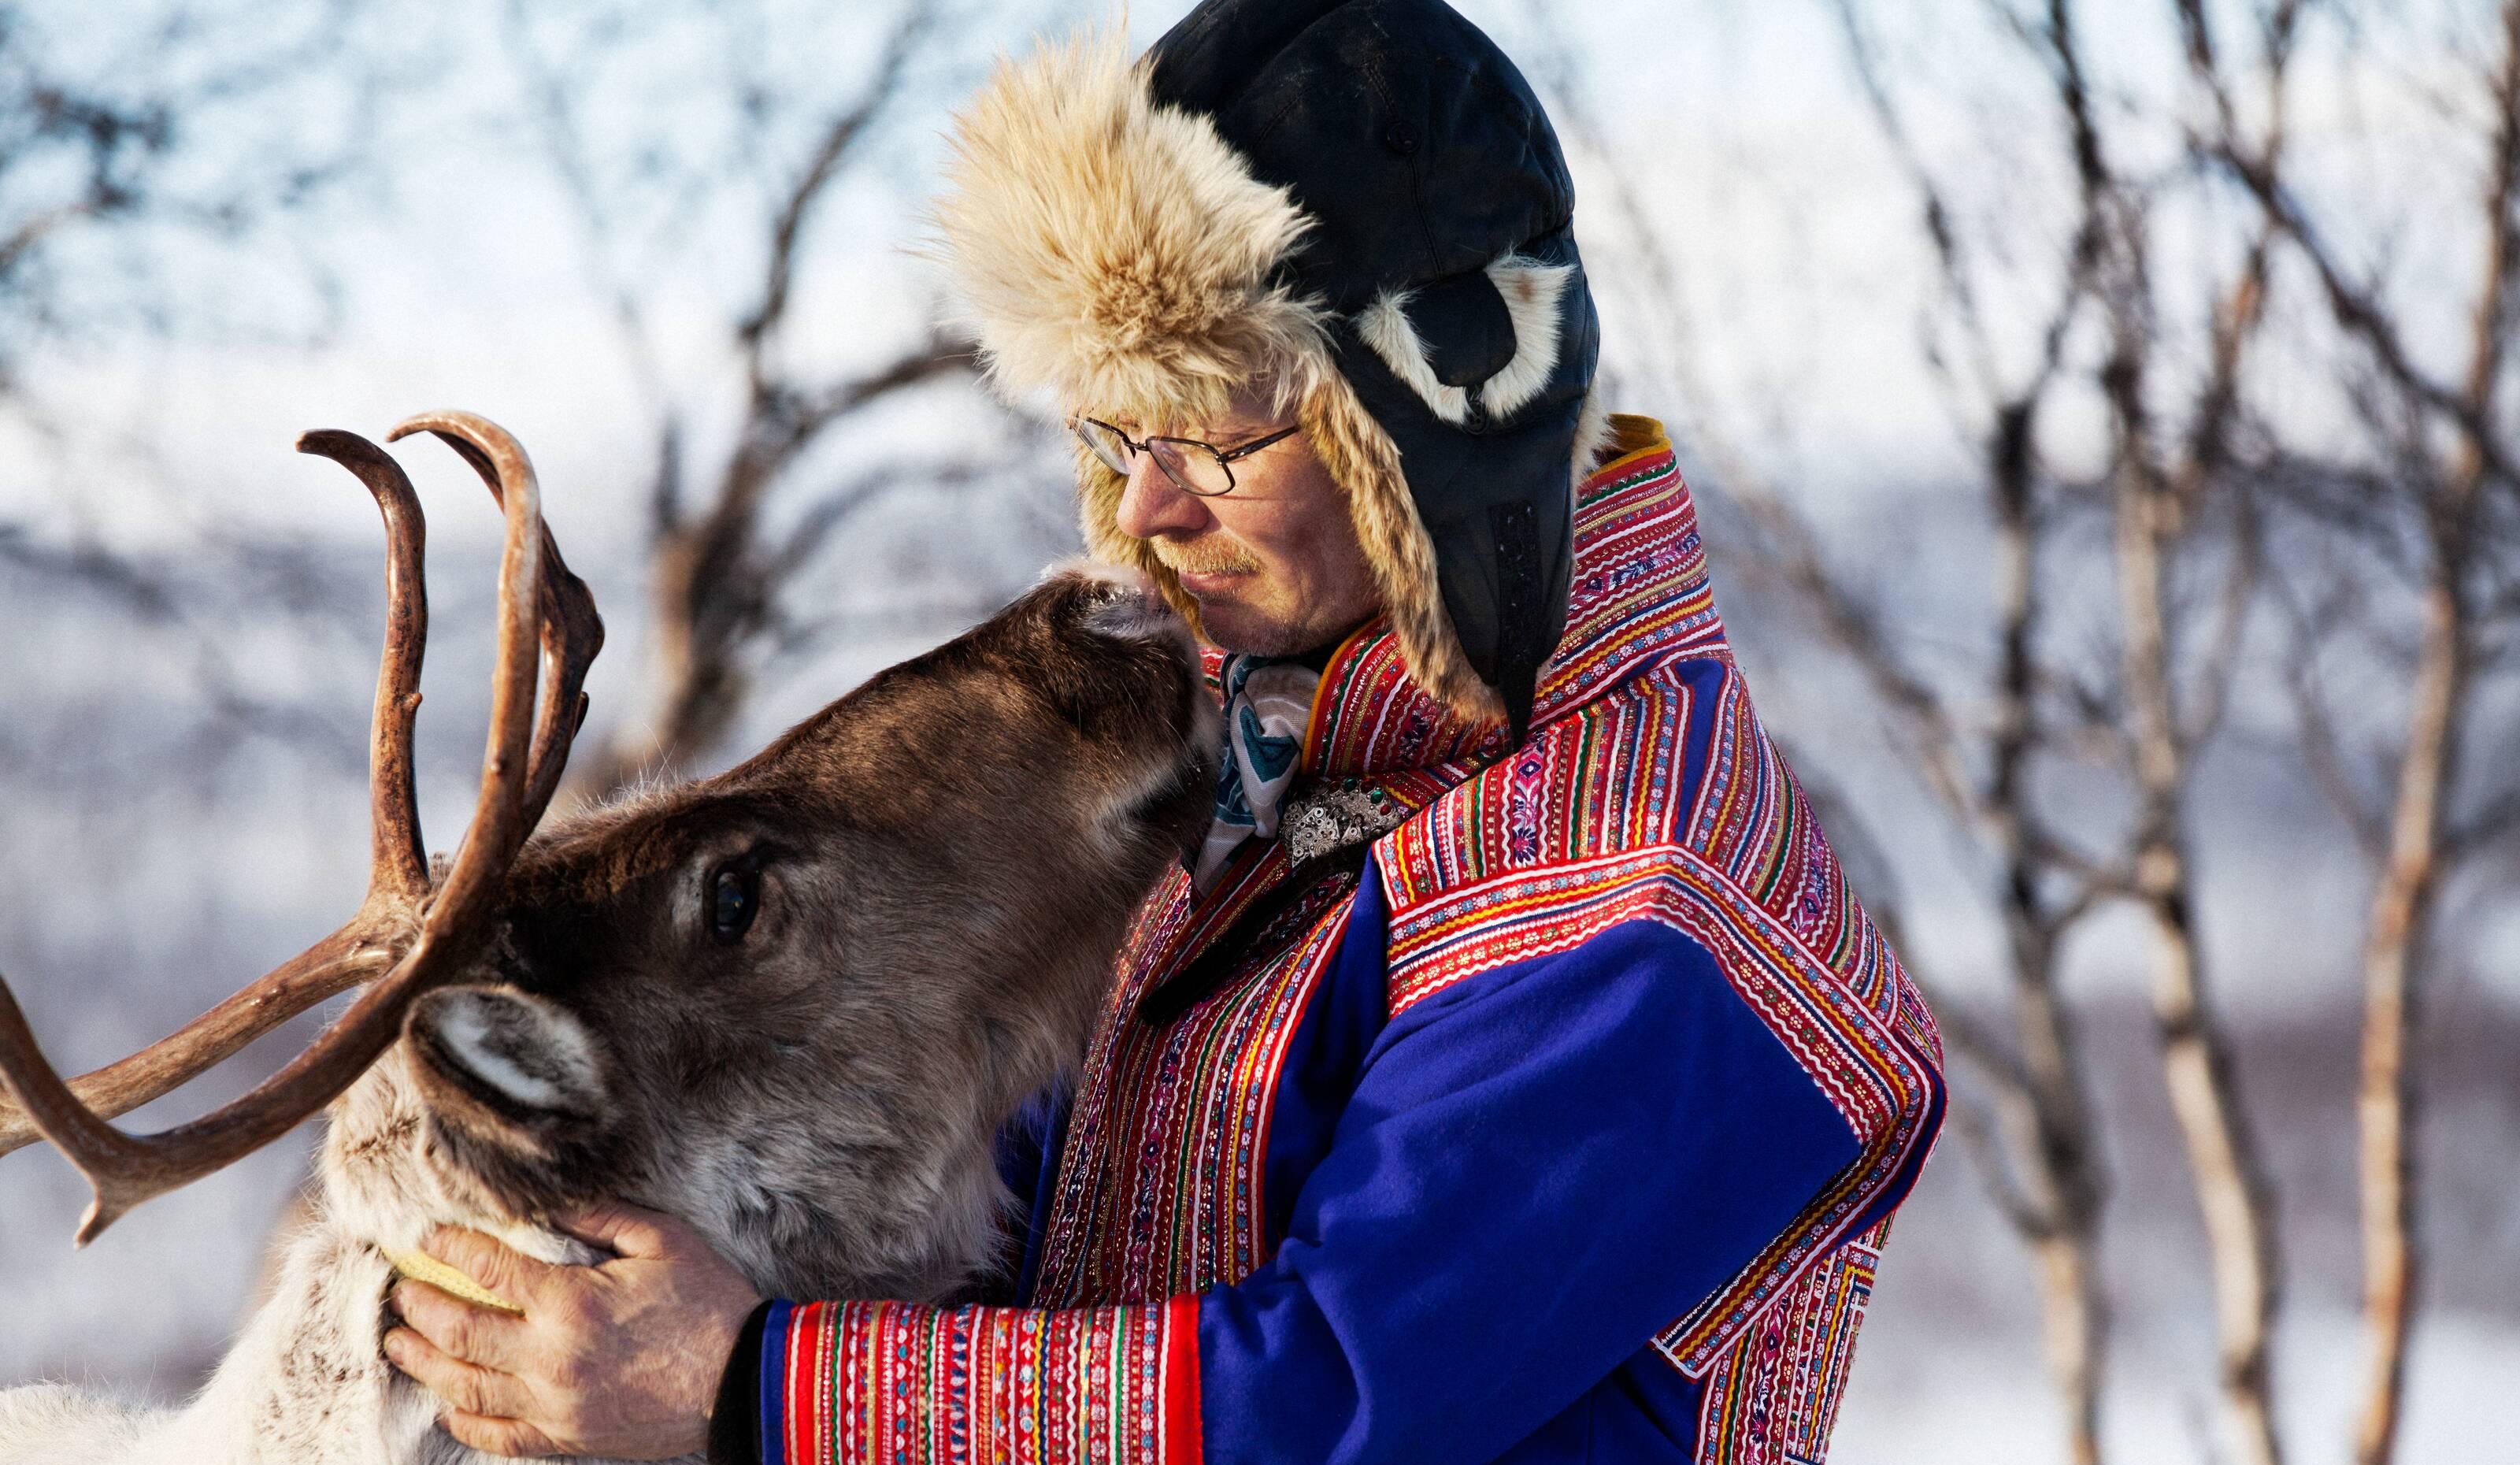 Meet the Sámi